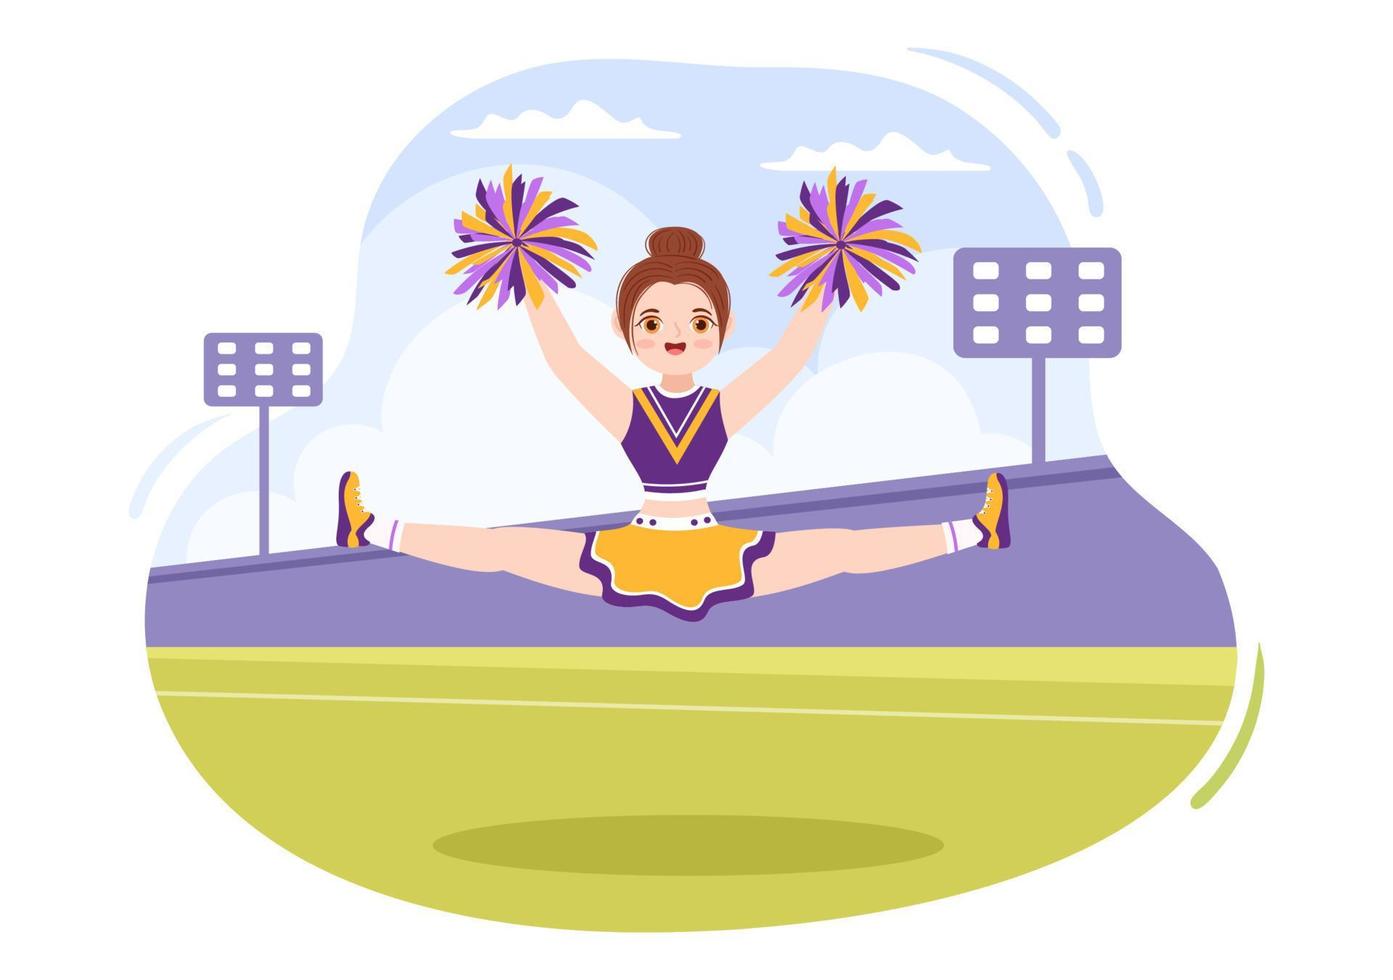 garota líder de torcida com pompons de dança e salto para apoiar o esporte de equipe durante a competição na ilustração de modelos desenhados à mão de desenho plano vetor